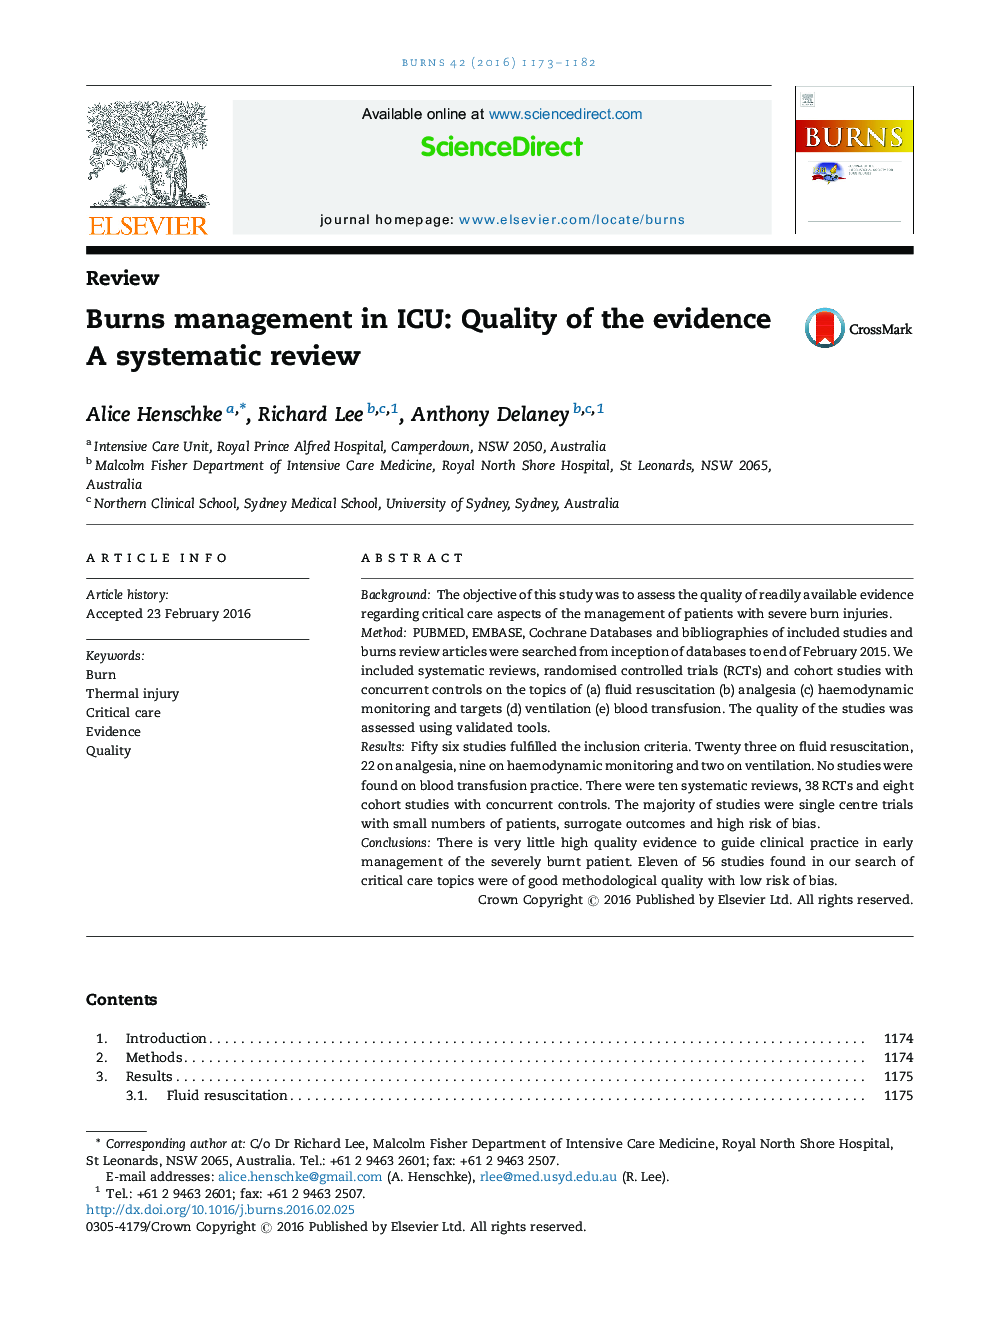 مدیریت سوختگی در ICU: کیفیت شواهد: بررسی سیستماتیک